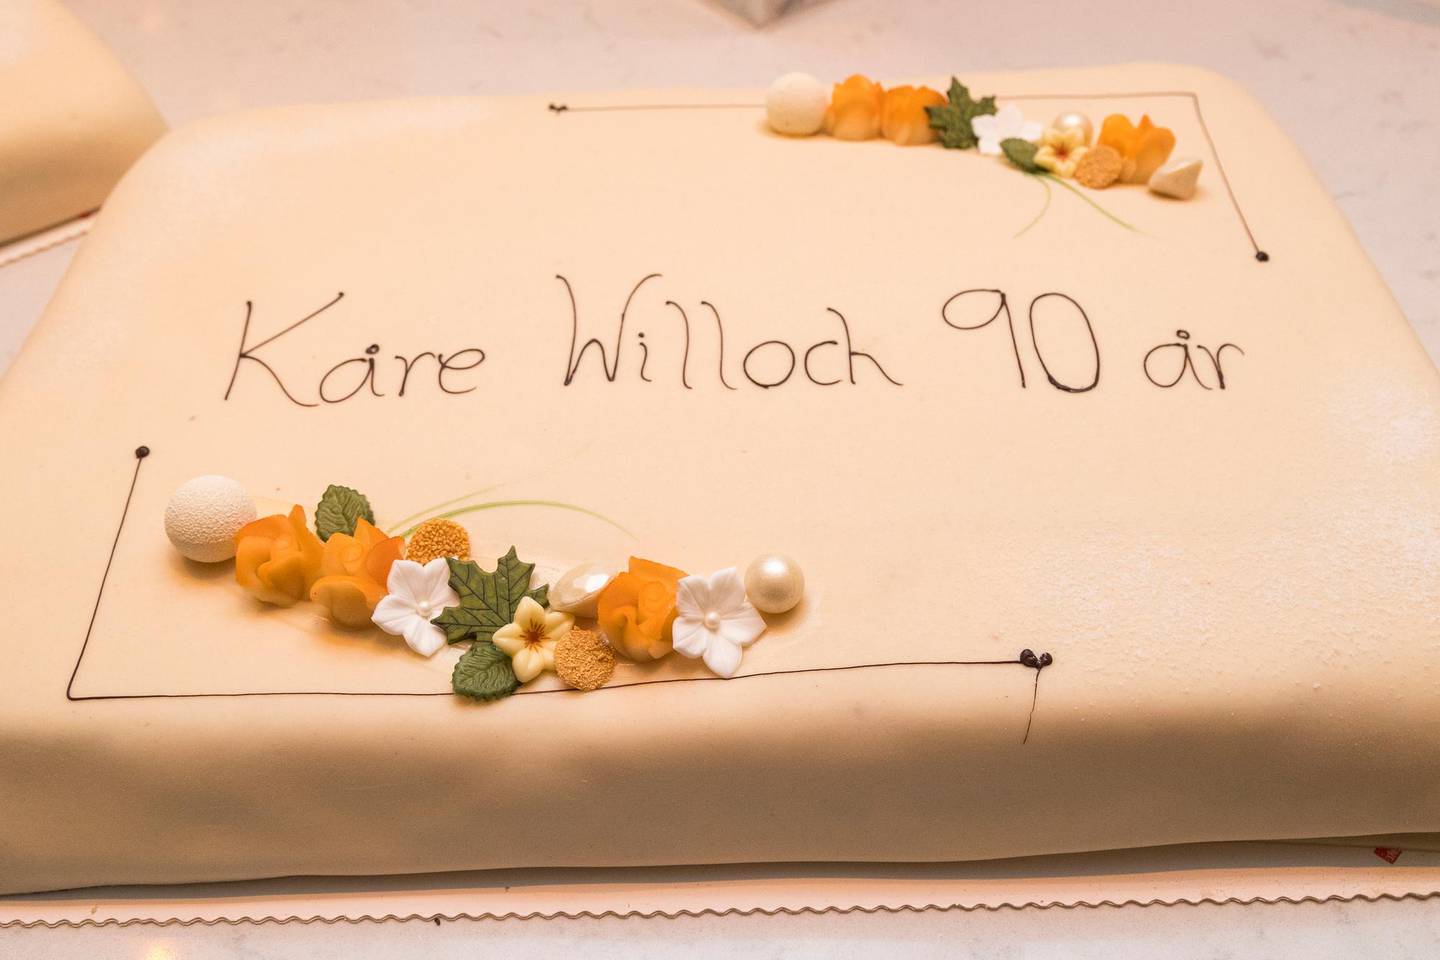 Oslo  20180930.
Kåre Willoch sin bursdagskake under en mottakelse på Høyre Hus søndag i Oslo i anledning Willochs egen 90-årsdag 3. oktober.
Foto: Heiko Junge / NTB scanpix